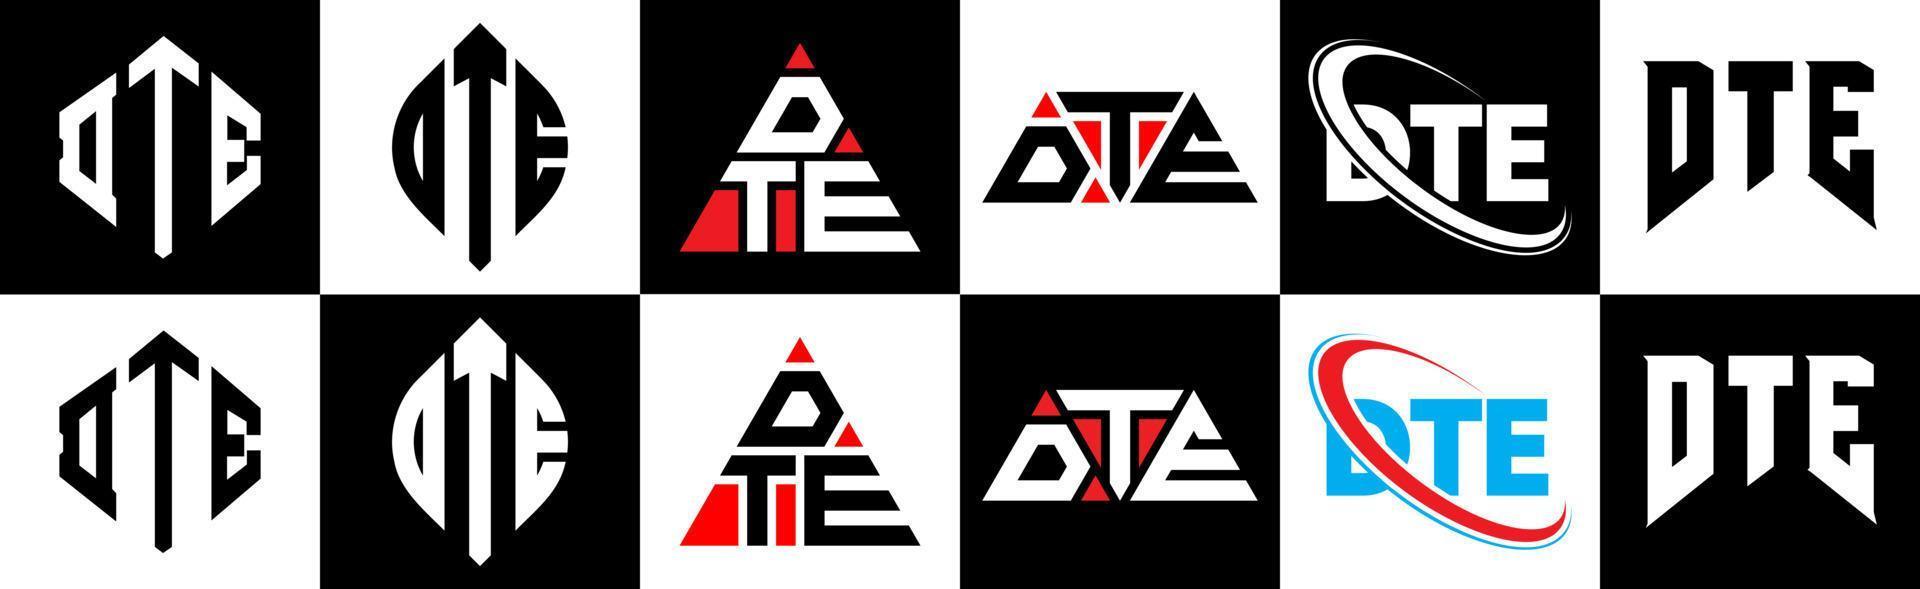 création de logo de lettre dte en six styles. dte polygone, cercle, triangle, hexagone, style plat et simple avec logo de lettre de variation de couleur noir et blanc dans un plan de travail. dte logo minimaliste et classique vecteur